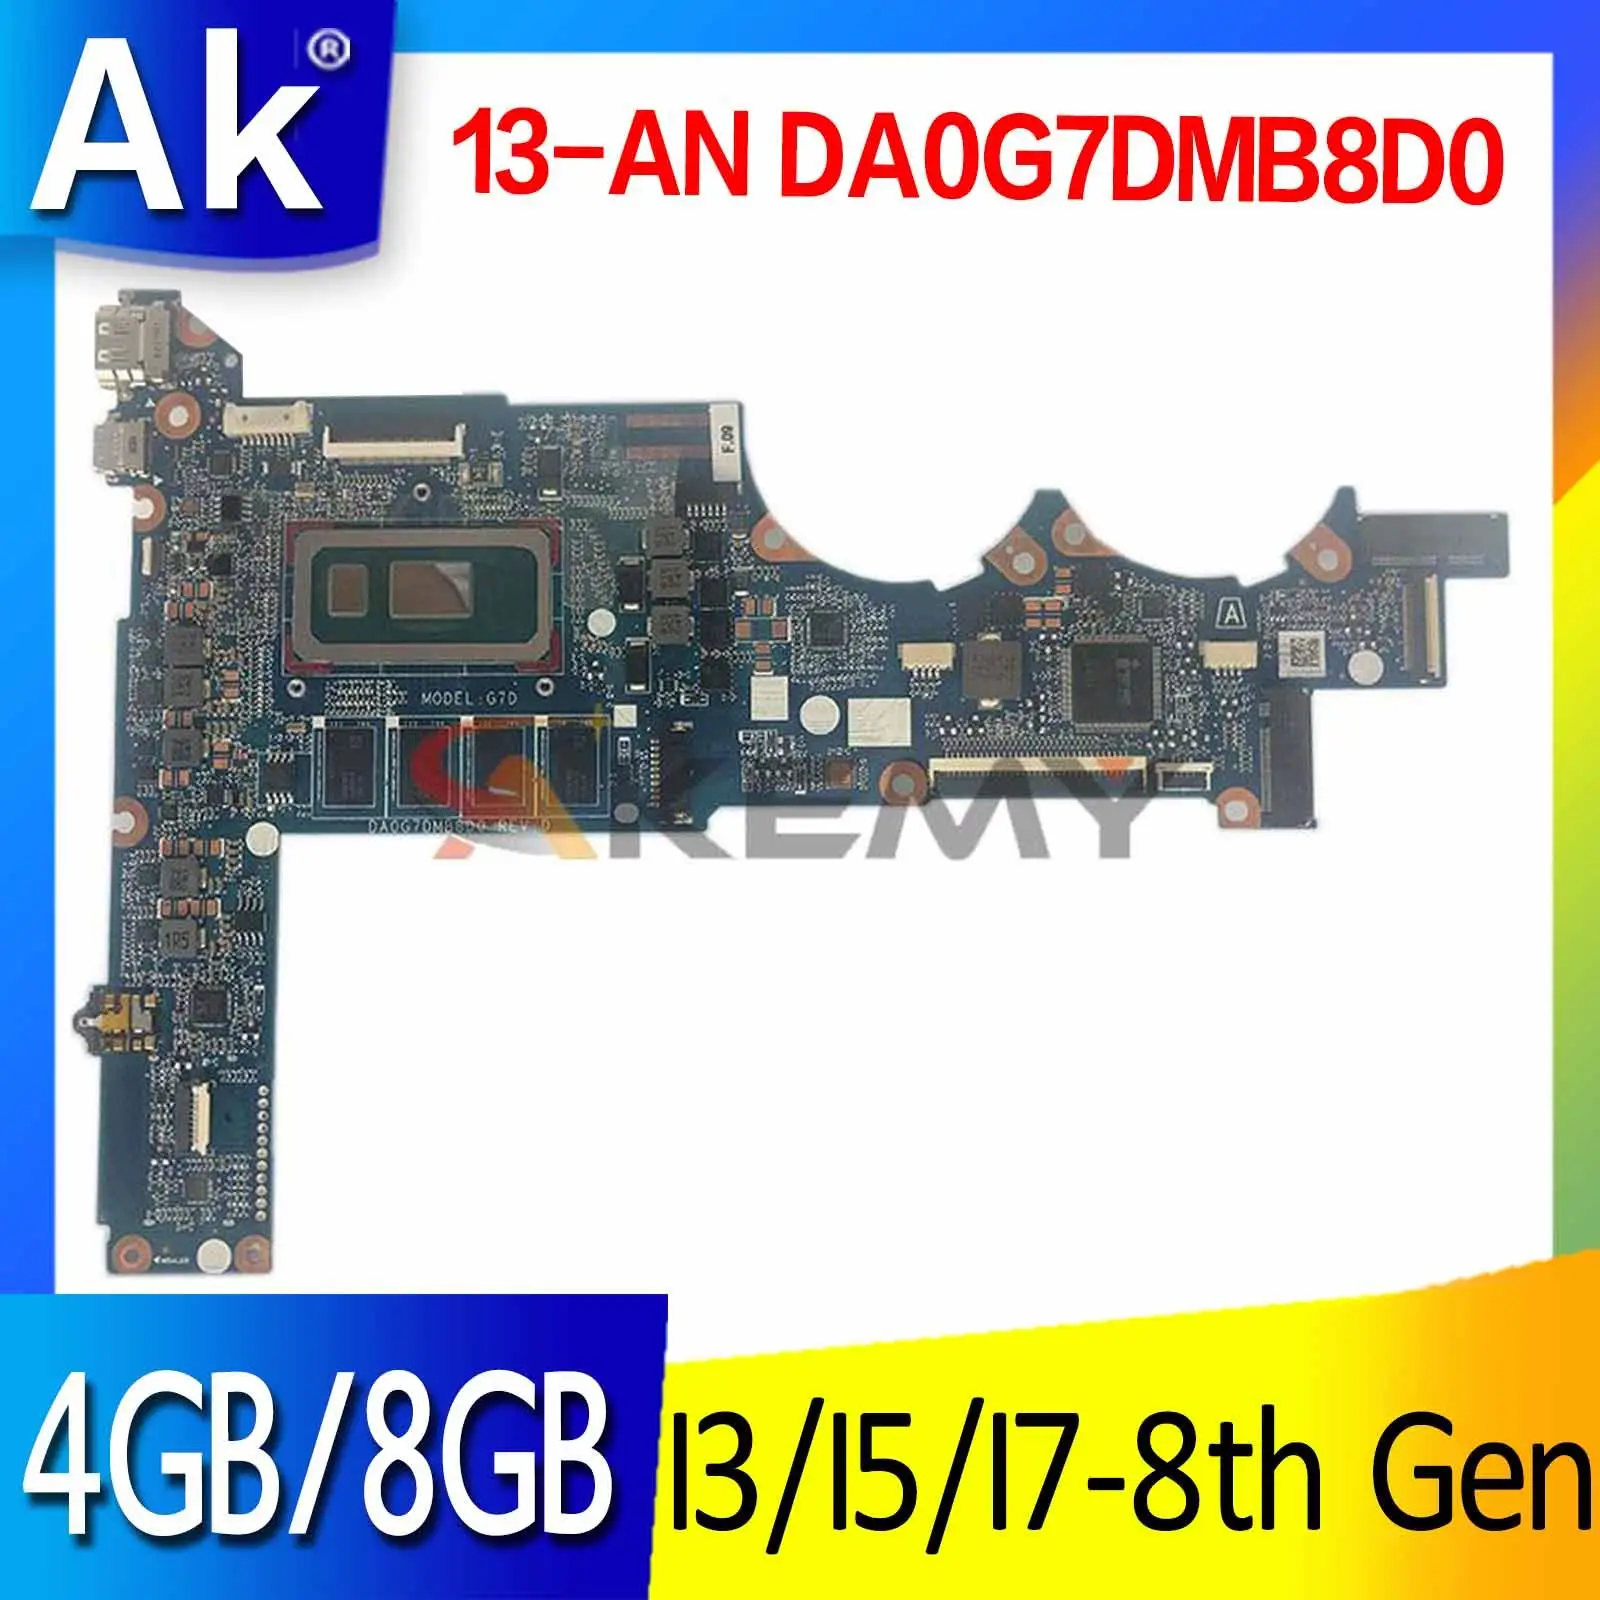 

L37350-601 L37350-601 Laptop Motherboard DA0G7DMB8D0 w/ i3 i5 i7 8th Gen 4GB 8GB RAM for HP Spectre 13-AN 13-AN00 Laptops UMA